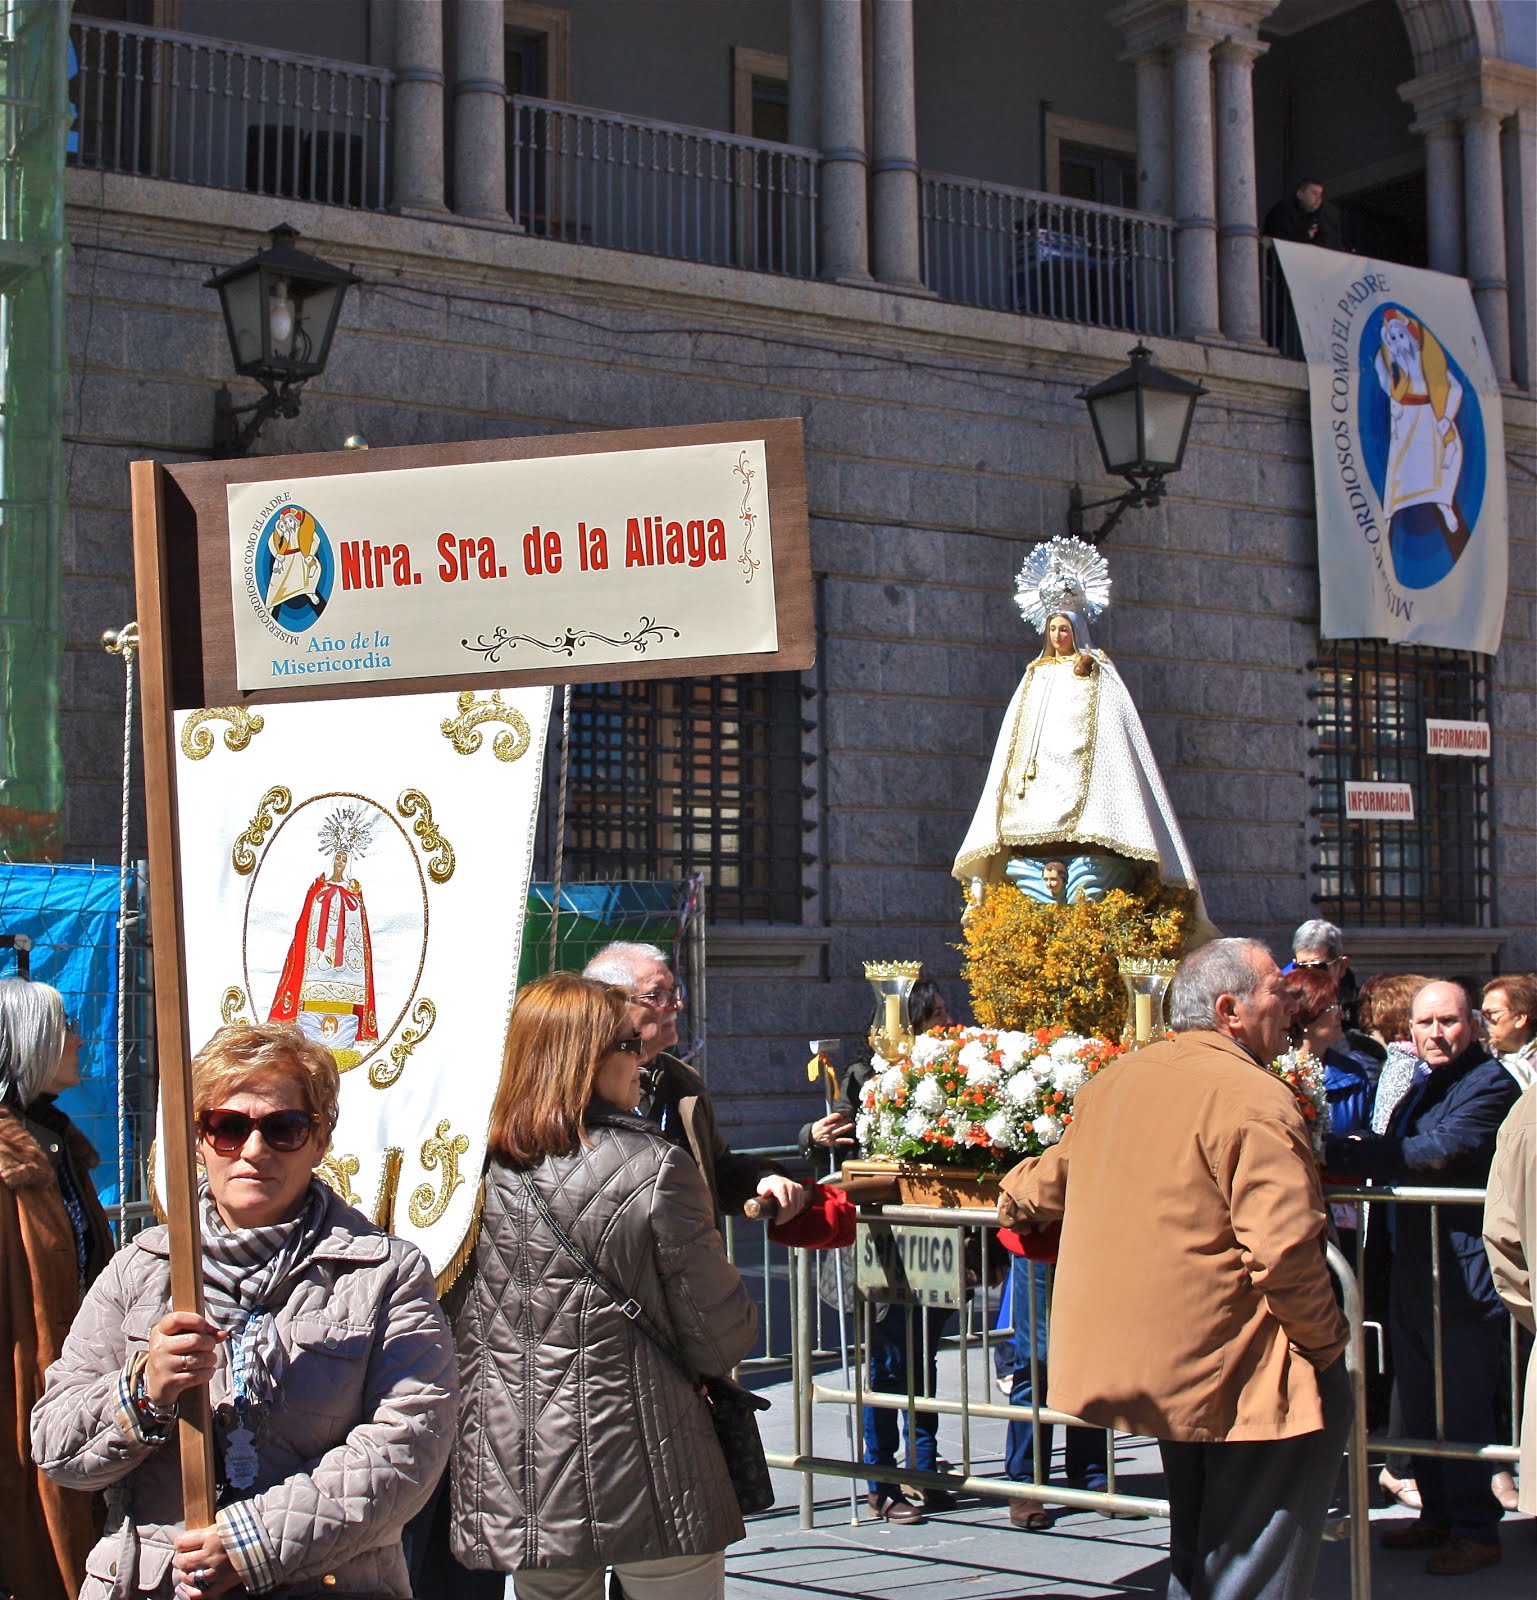 Fotogaleria: La Virgen de la Aliaga en el Encuentro Diocesano de la Misericordia. Teruel 2016